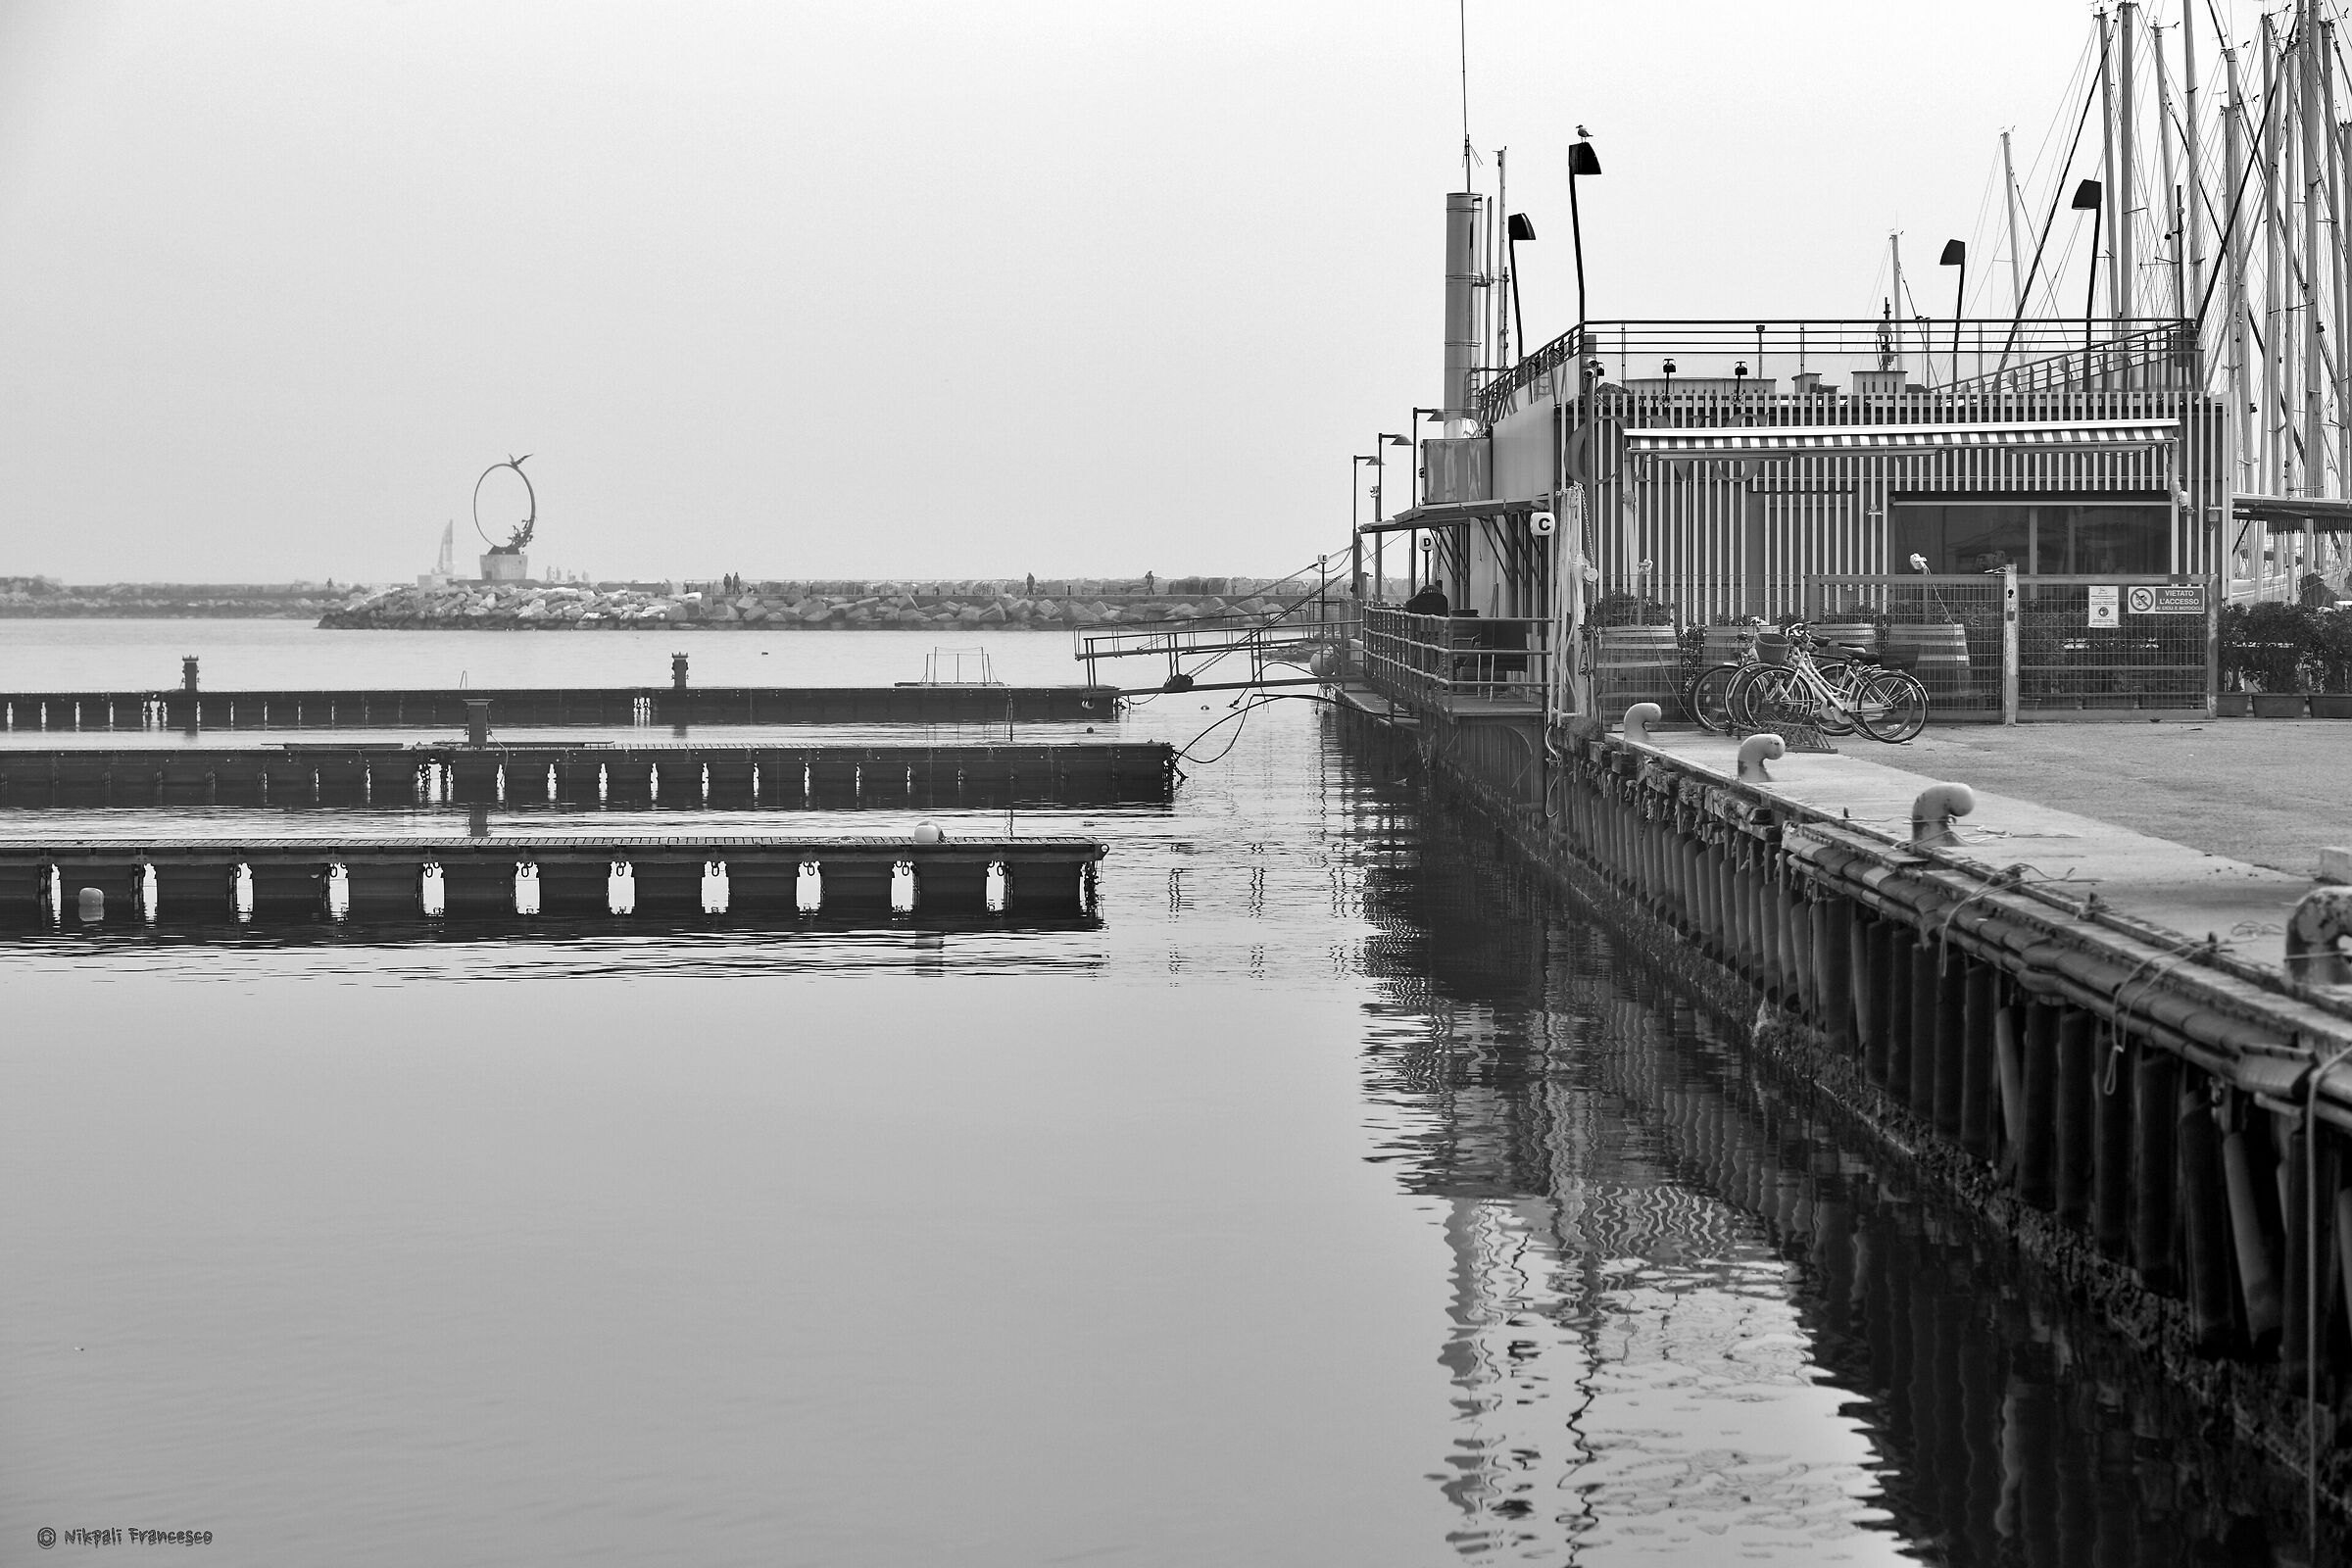 Empty docks...